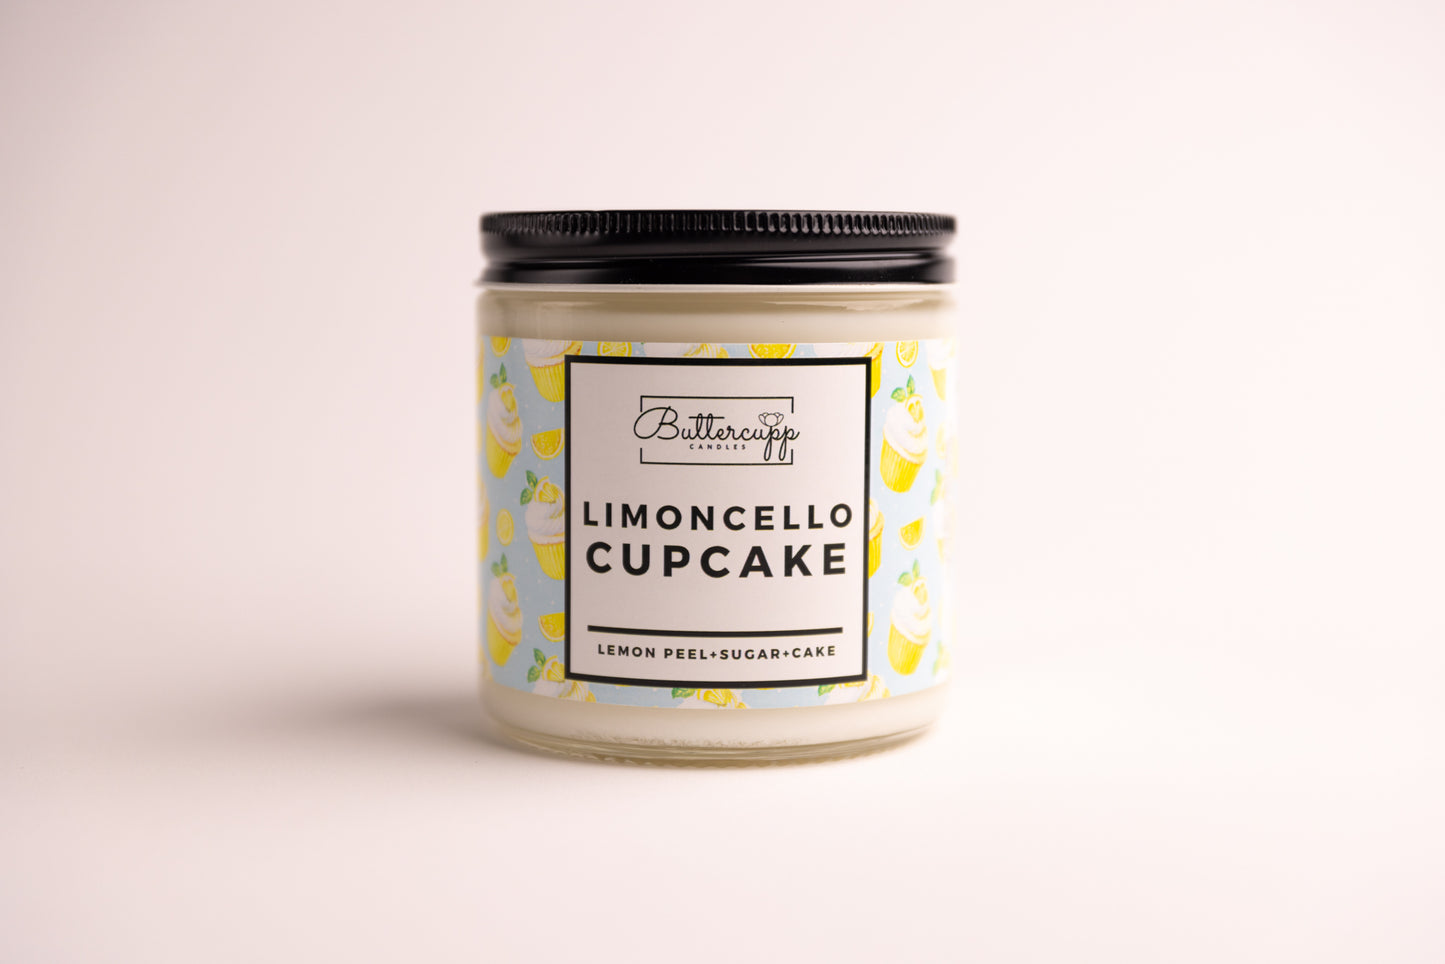 Limoncello Cupcake